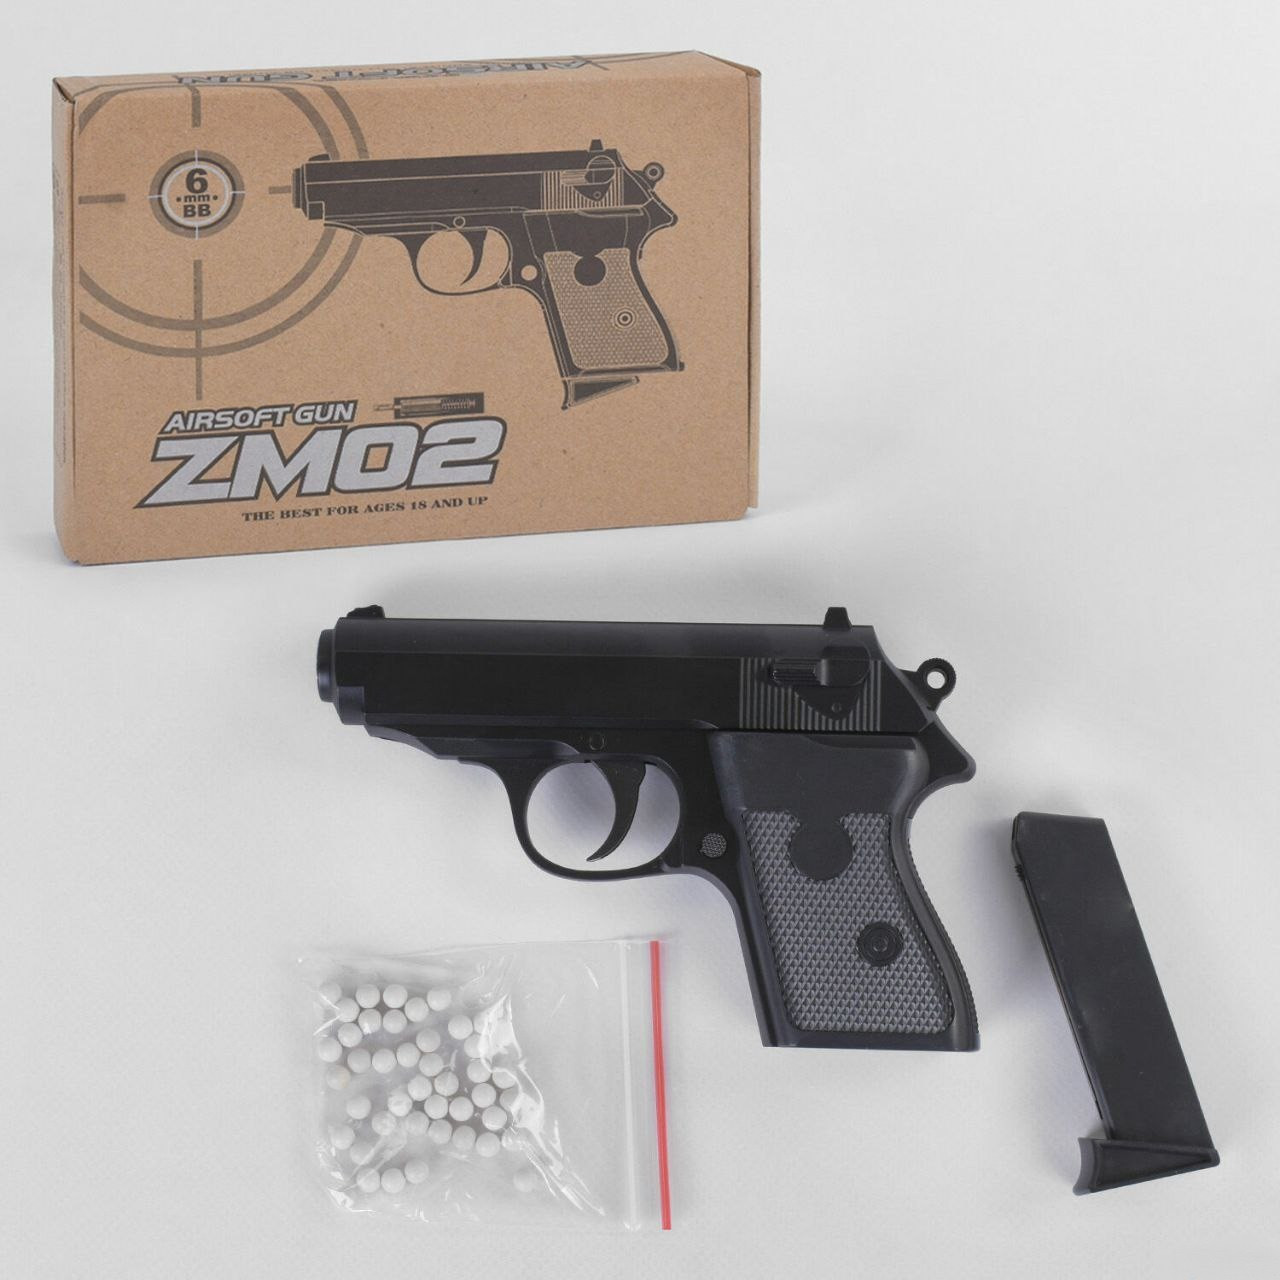 Іграшковий спринговый металевий пістолет Вальтер на пульках / Пістолет Walther PP ZM02